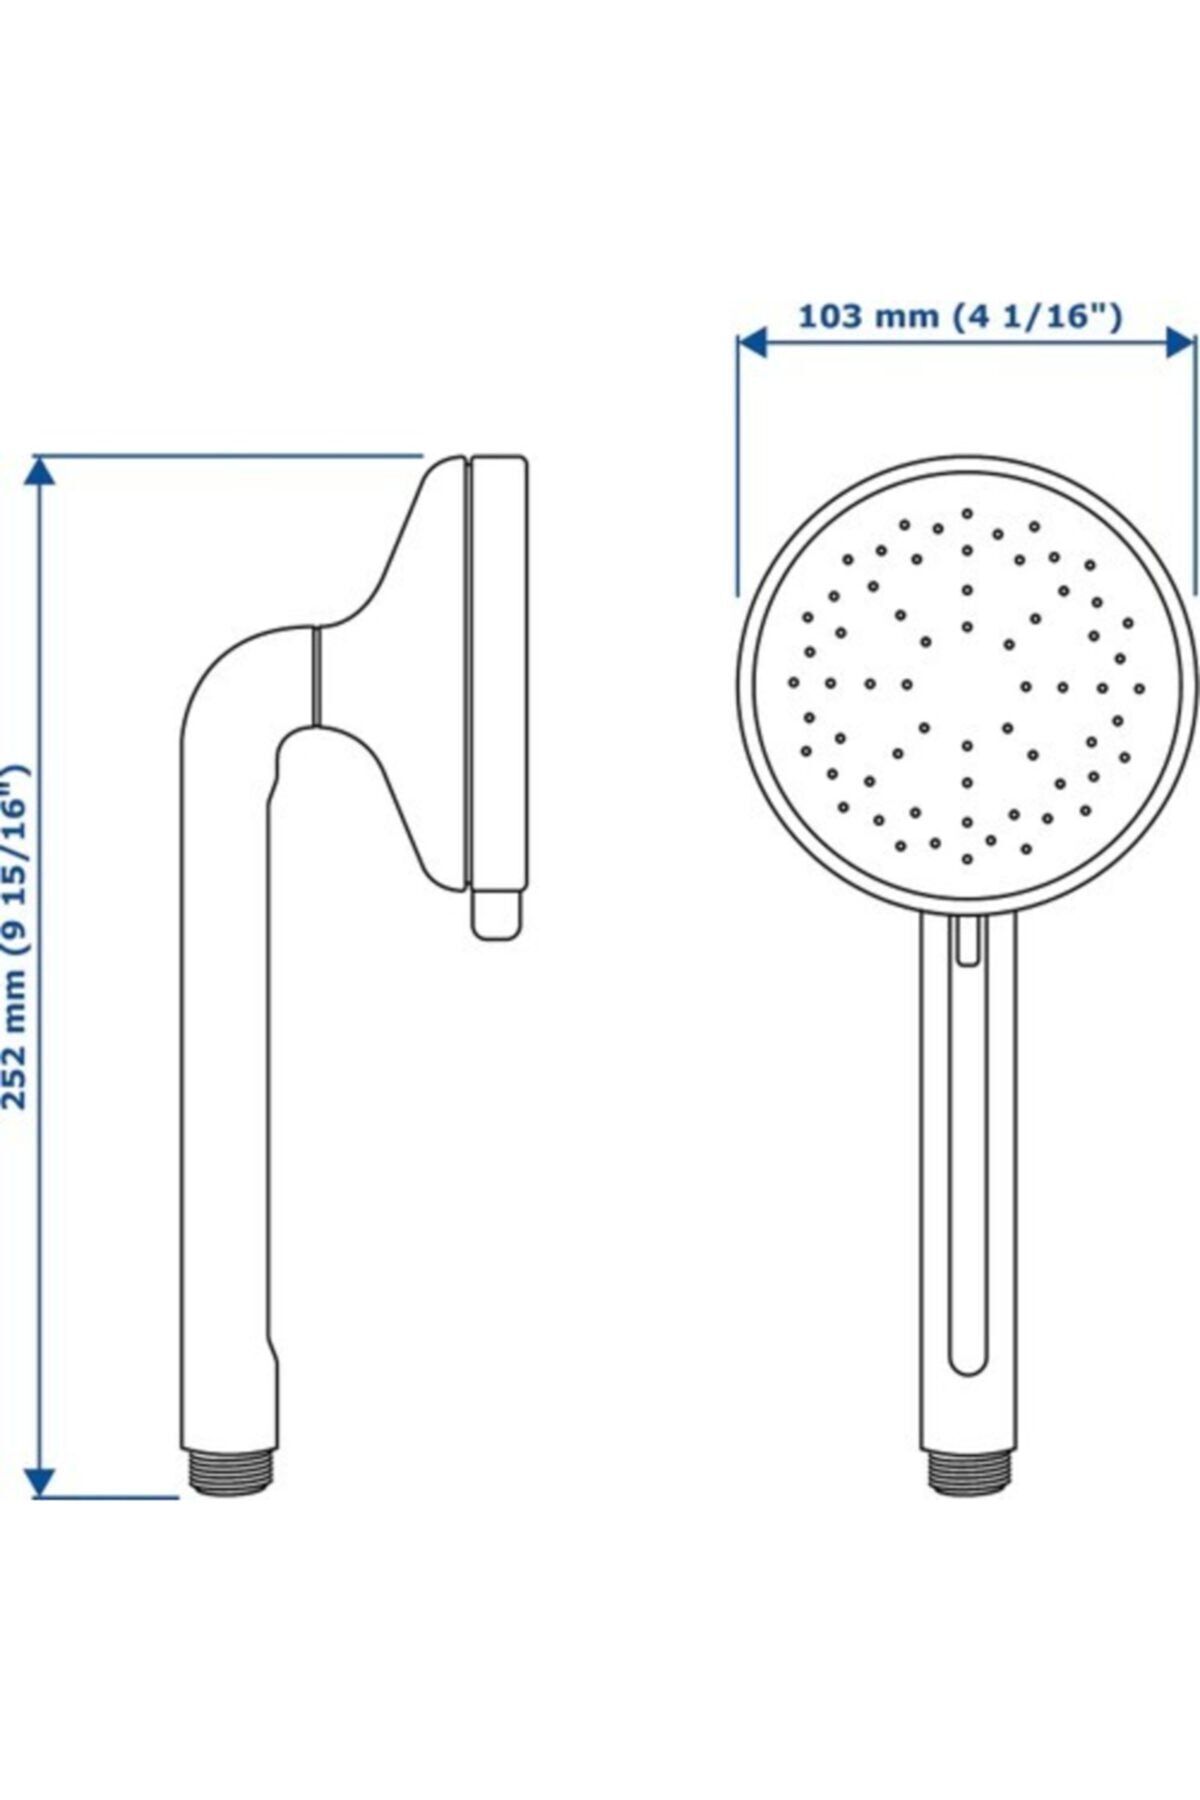 IKEA Voxnan Krom Kaplama Duş Başlığı El Duşu 5 Fonksiyonlu